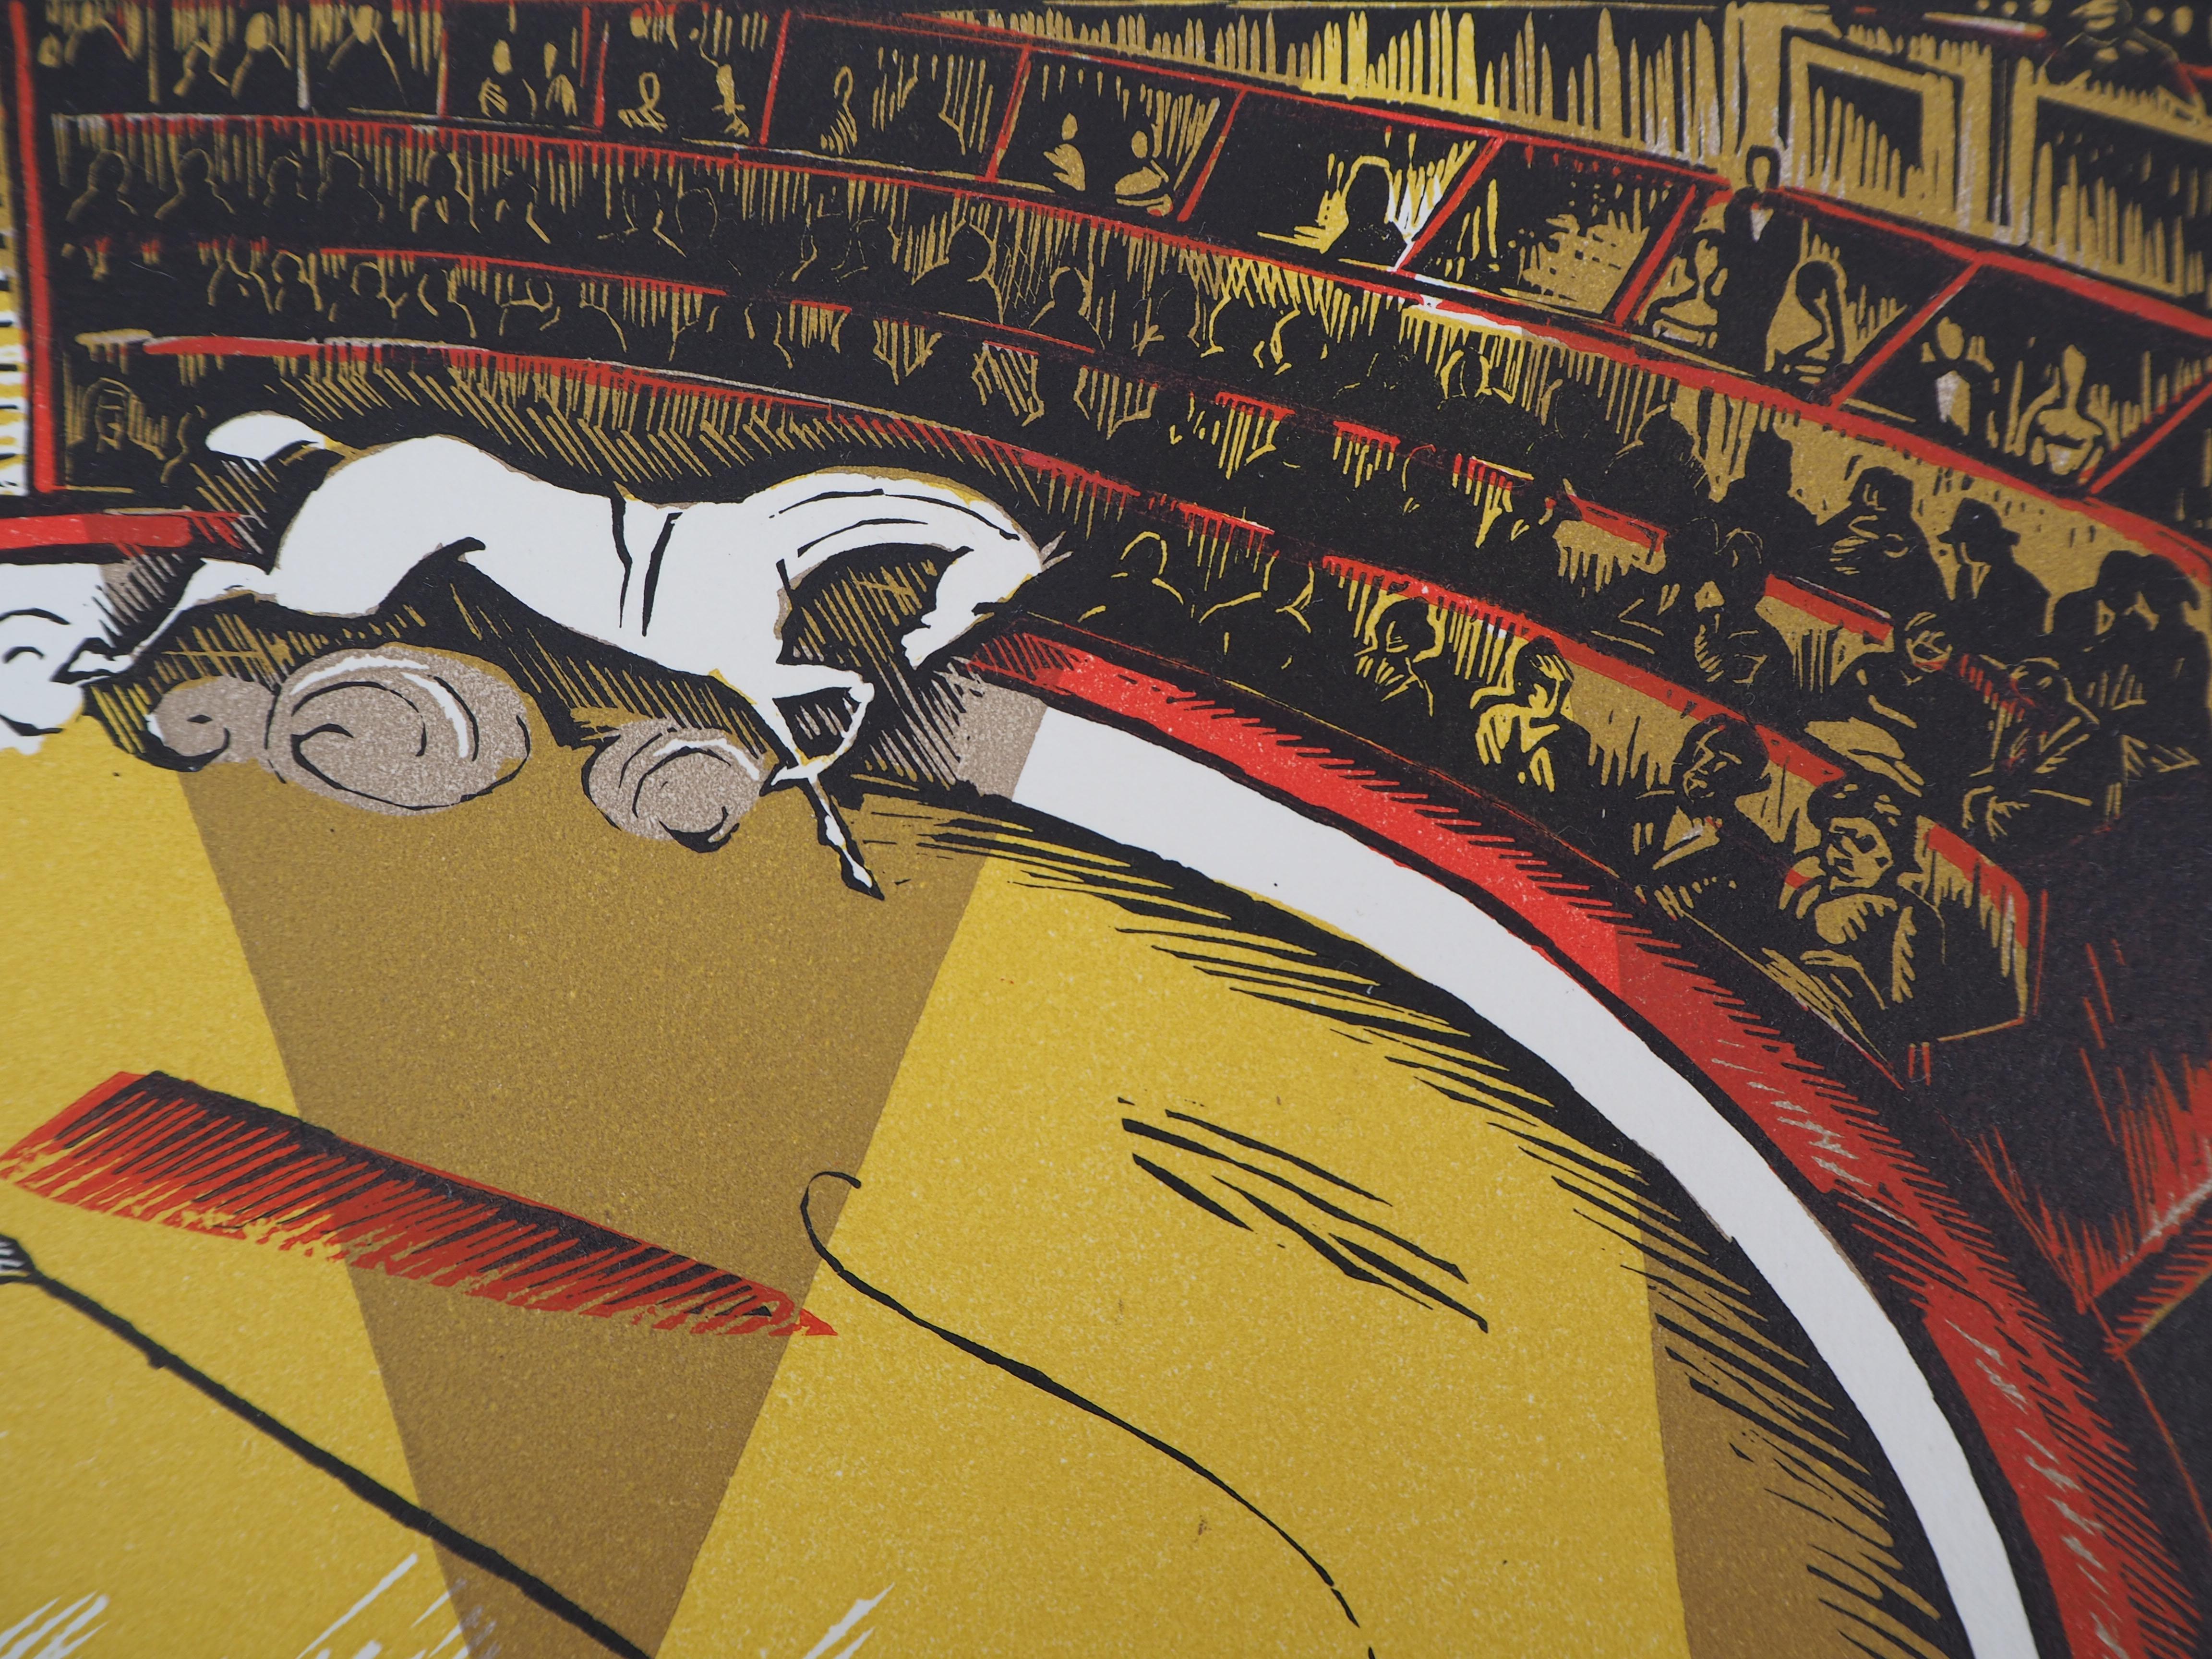 Robert BONFILS
Au cirque, 1927

Gravure sur bois originale
Signé à la main au crayon
Numéroté /160
Sur vélin 32,5 x 25,5 cm (environ 13 x 10 in)
Porte le cachet de l'éditeur 'Imagier de la Gravure sur Bois' (Lugt 1140a)

Excellent état